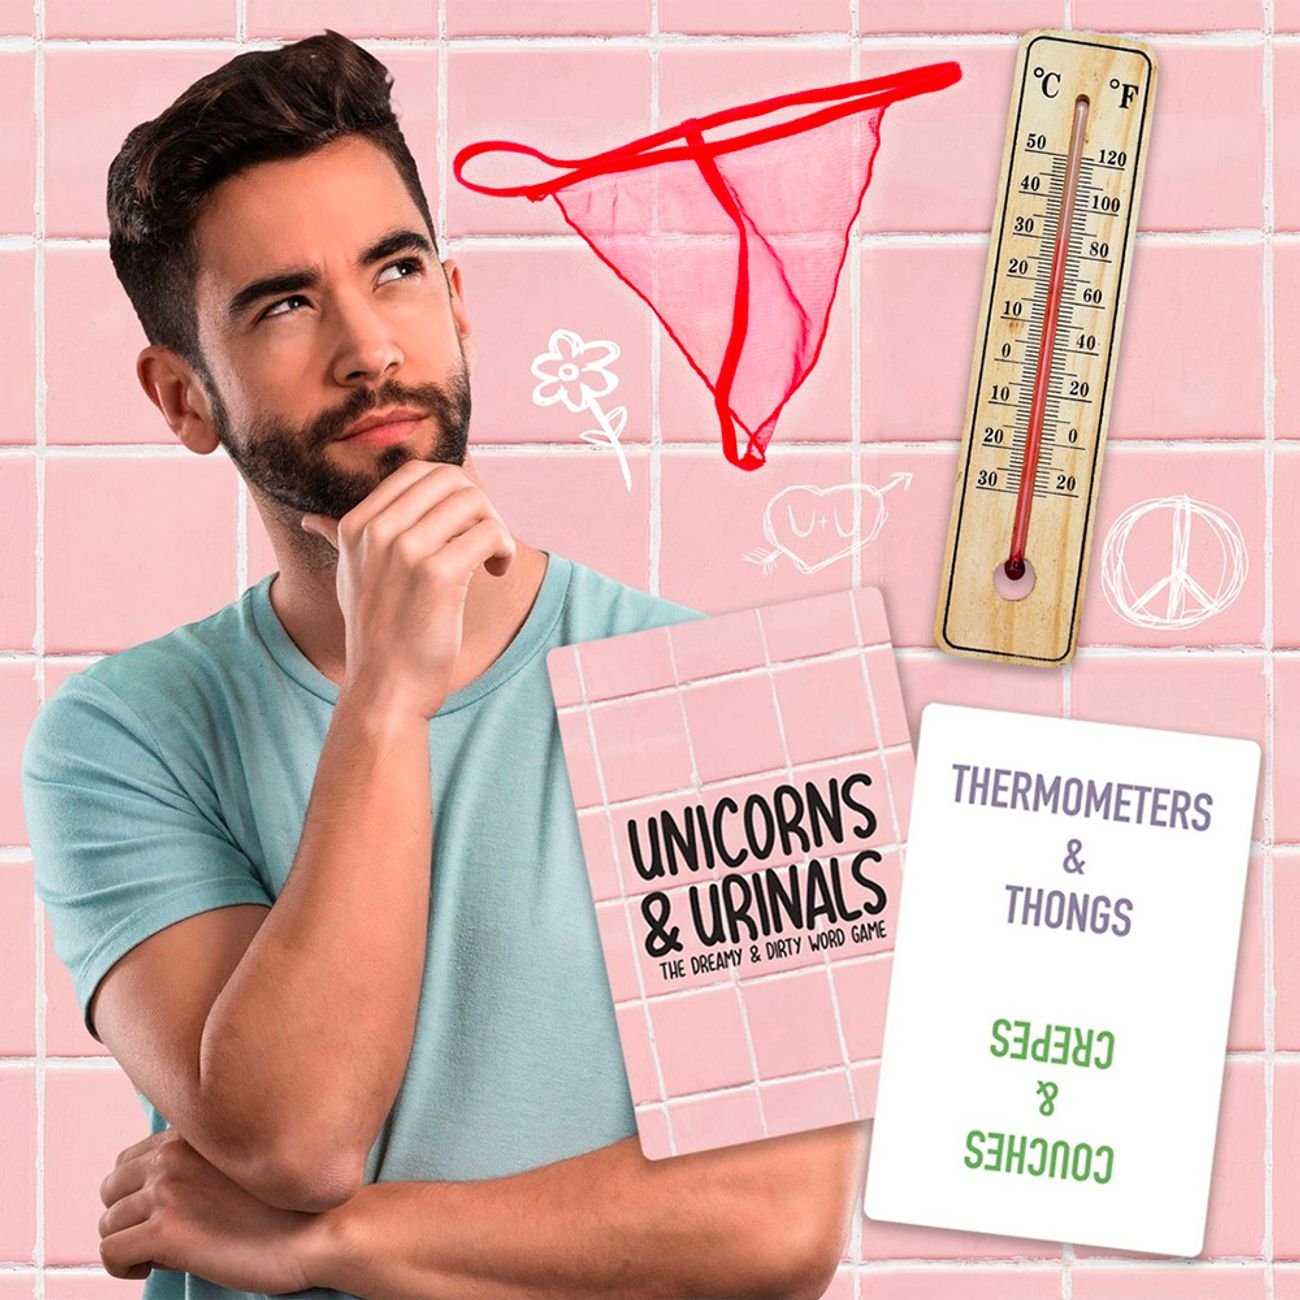 unicorns-and-urinals-73882-3